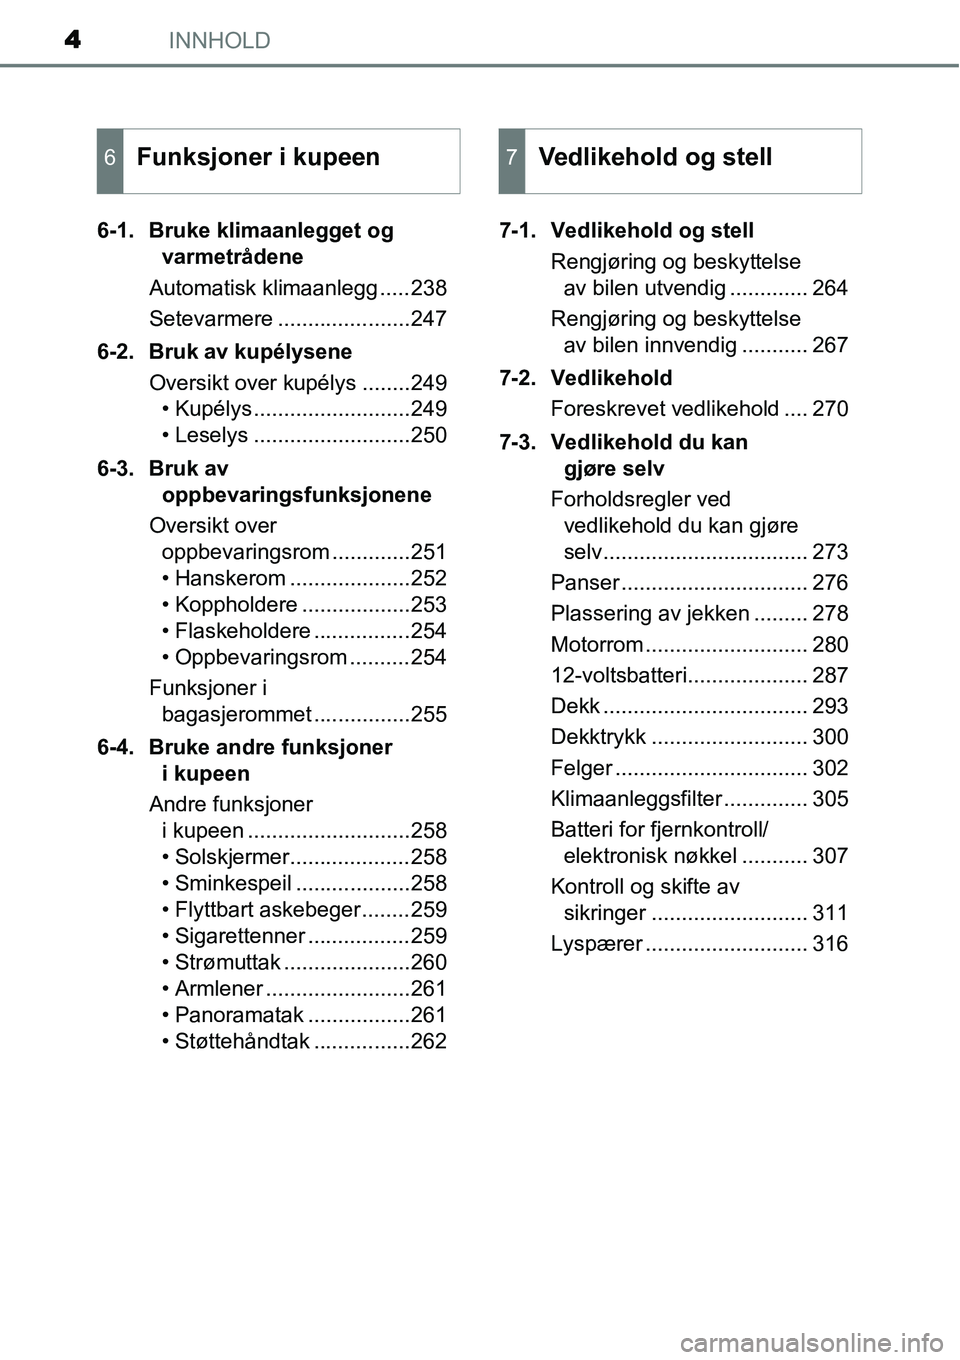 TOYOTA YARIS HYBRID 2014  Instruksjoner for bruk (in Norwegian) INNHOLD4
6-1. Bruke klimaanlegget og 
varmetrådene
Automatisk klimaanlegg .....238
Setevarmere ......................247
6-2. Bruk av kupélysene
Oversikt over kupélys ........249
• Kupélys .....